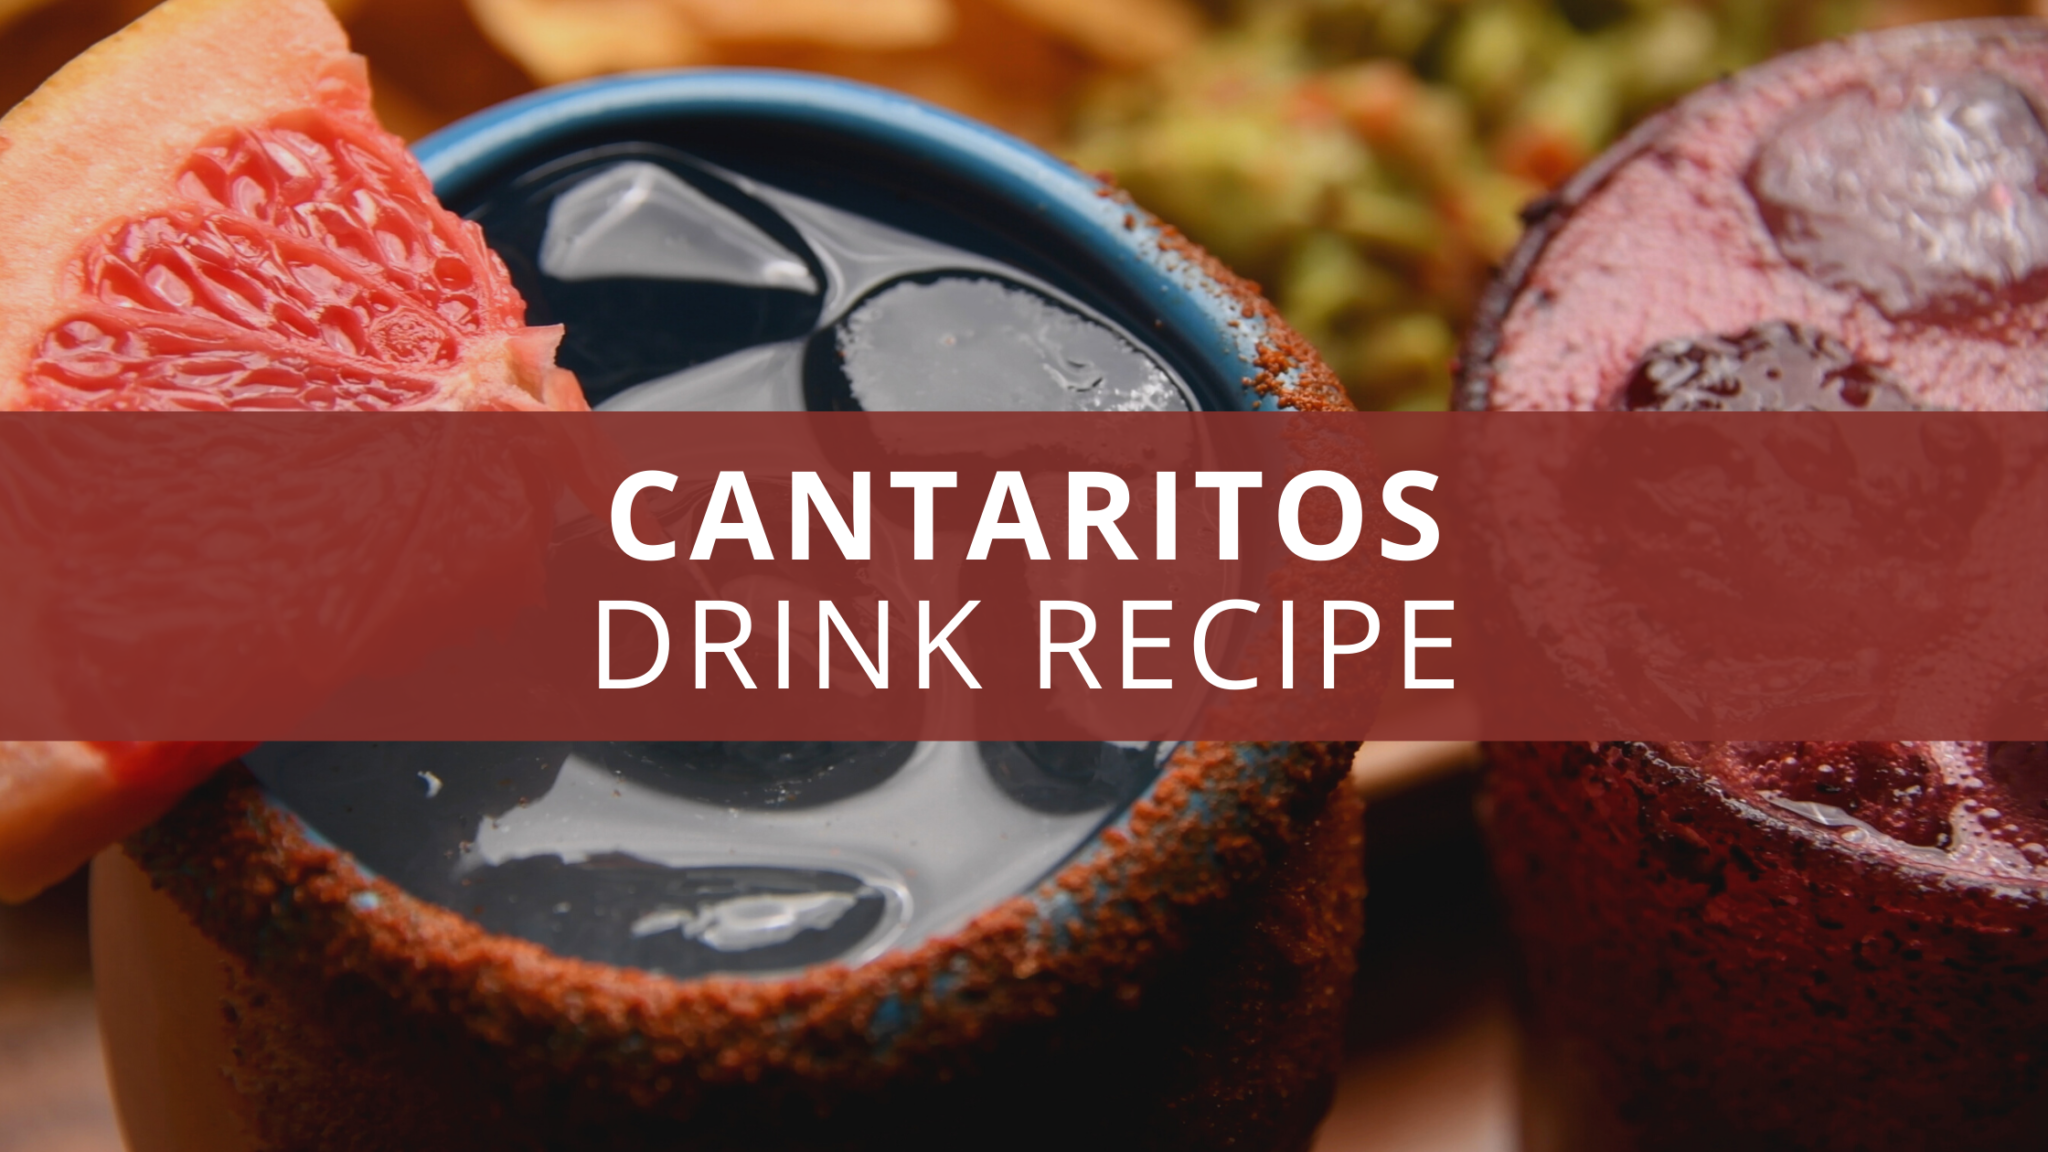 Cantaritos Drink Recipe (Mexican Clay Pot Drink)